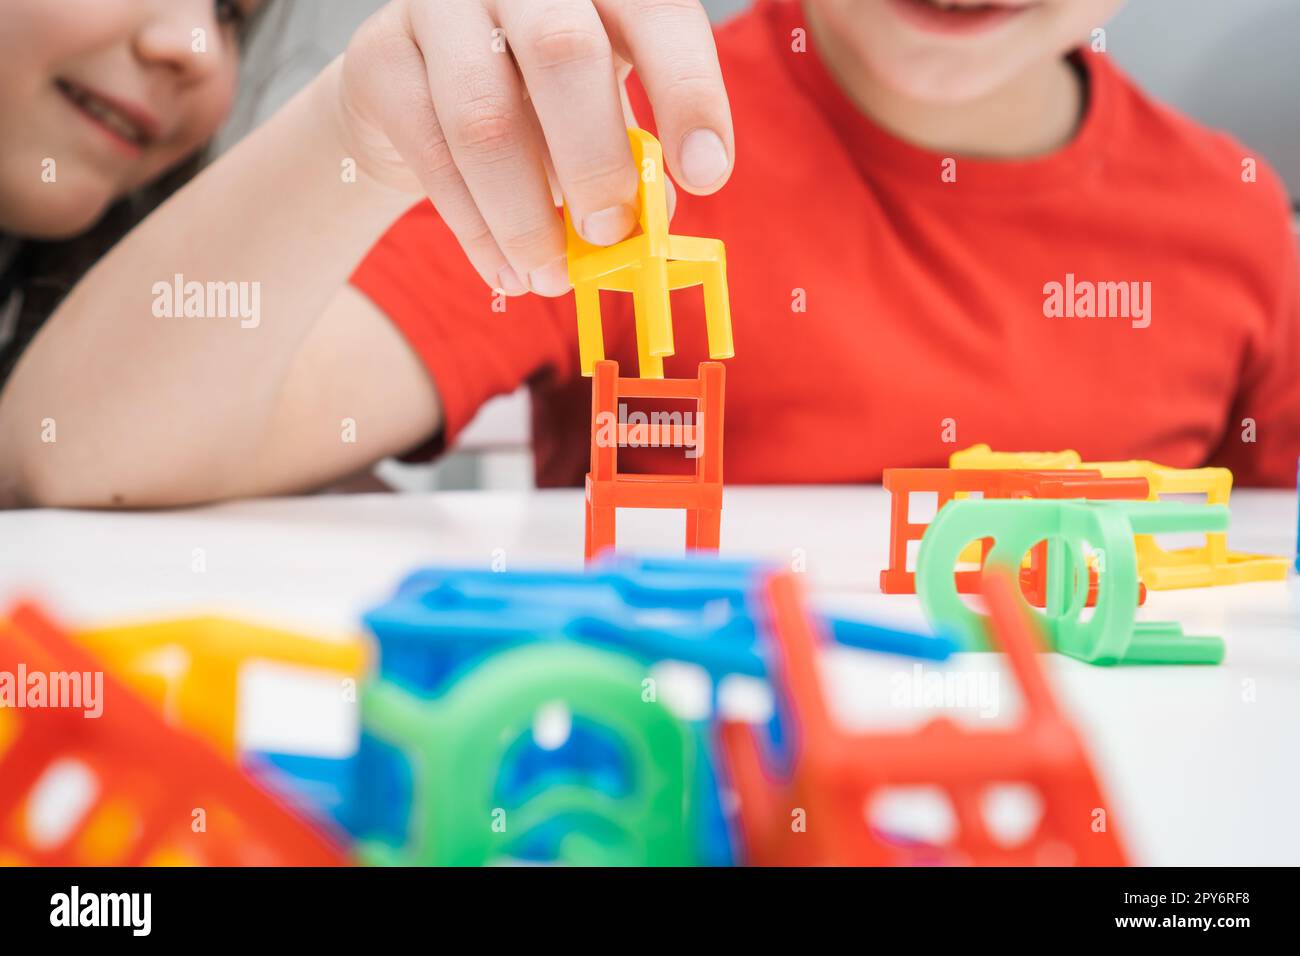 Les petits enfants heureux jouent jouet chaises colorées assis à la table près de la table. Garçon et fille construire à partir de petits meubles en plastique. Banque D'Images